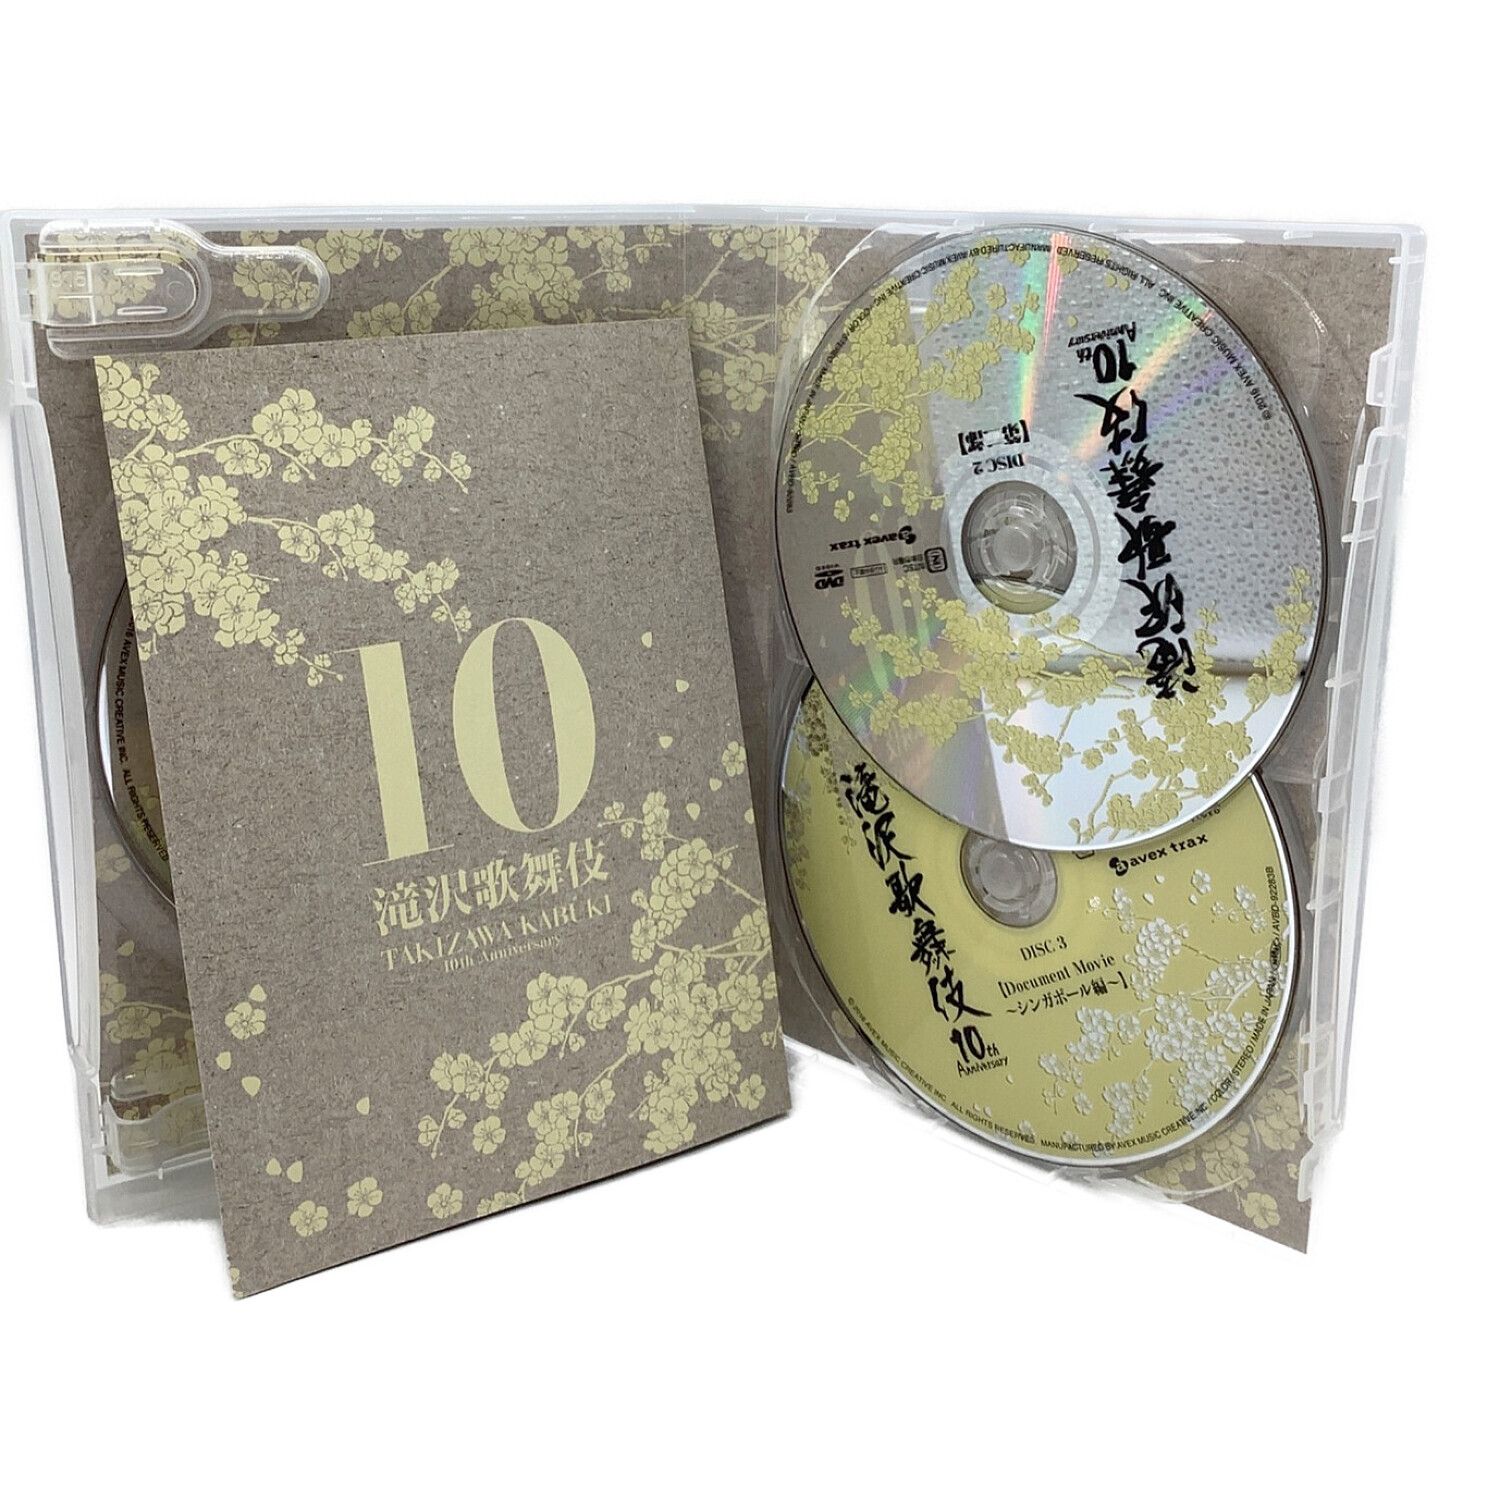 滝沢歌舞伎10th Anniversary シンガポール盤〈3枚組〉 - お笑い 